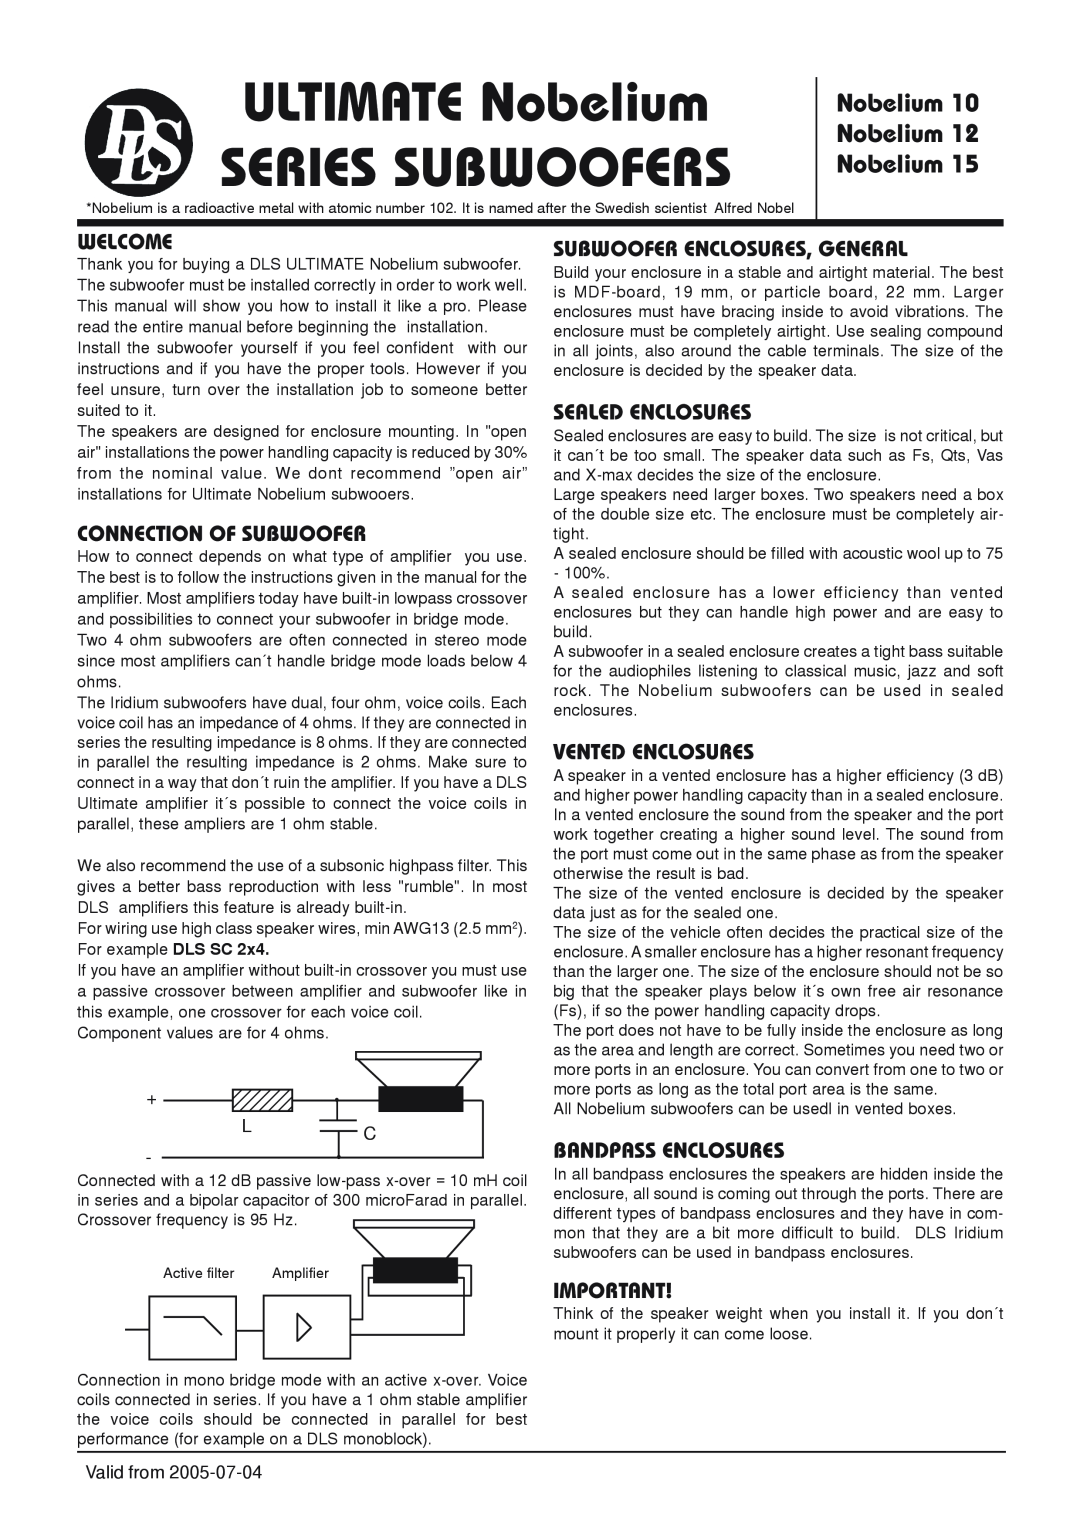 DLS Svenska AB NOBELIUM 12 manual Welcome, Connection Of Subwoofer, Subwoofer Enclosures, General, Sealed Enclosures 